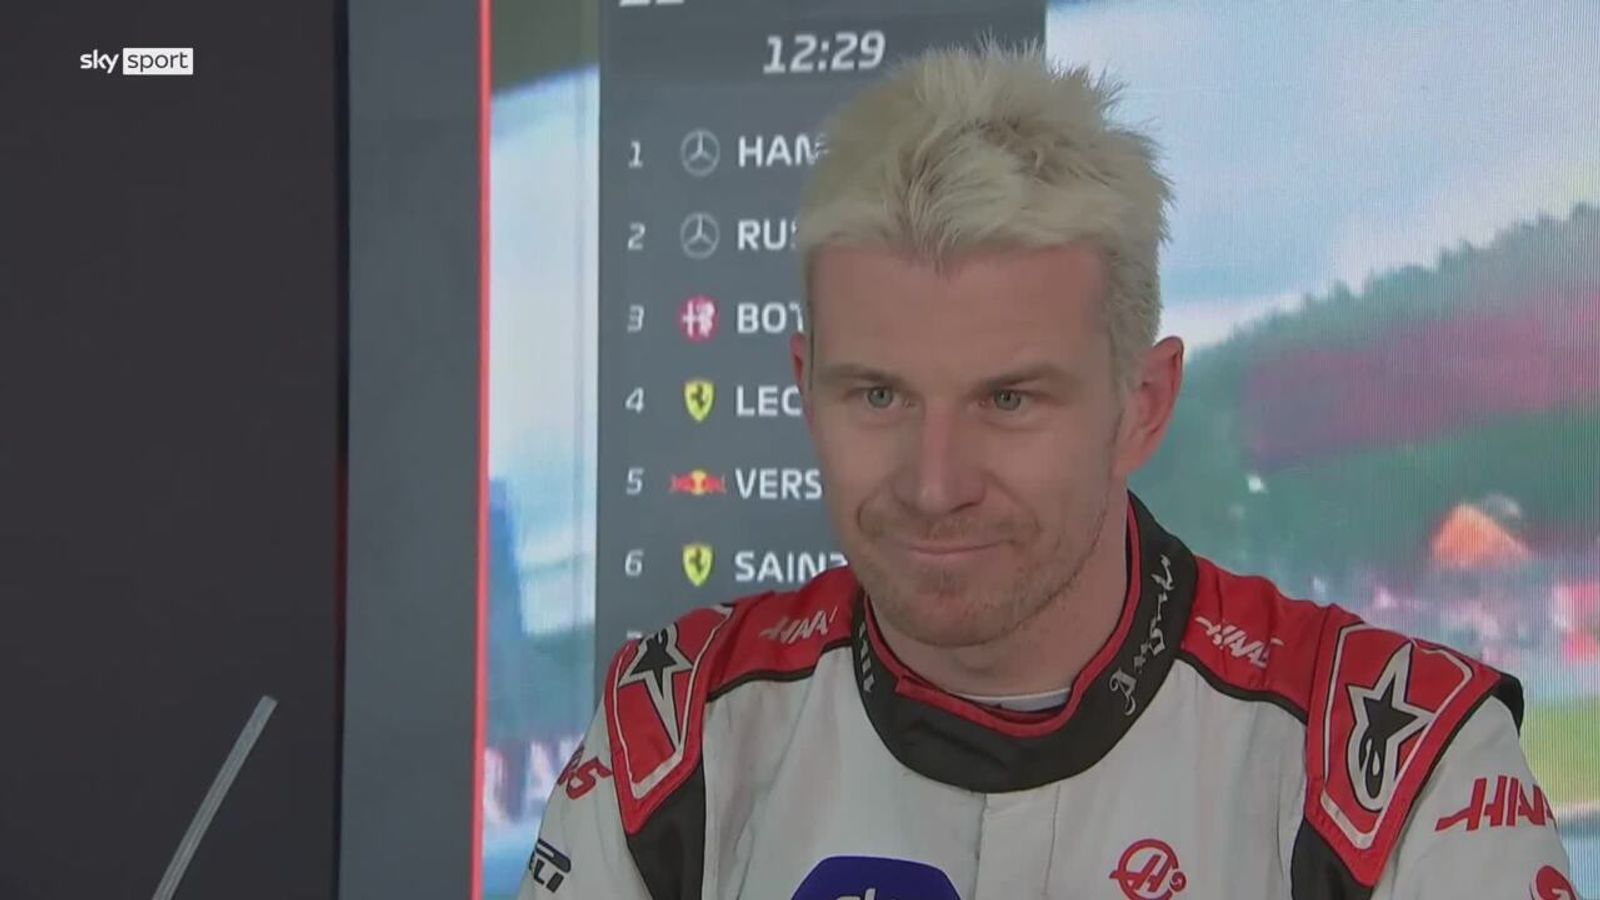 Formel 1 Haas-Pilot Hülkenberg mit Problemen in der Quali in Belgien Formel 1 News Sky Sport